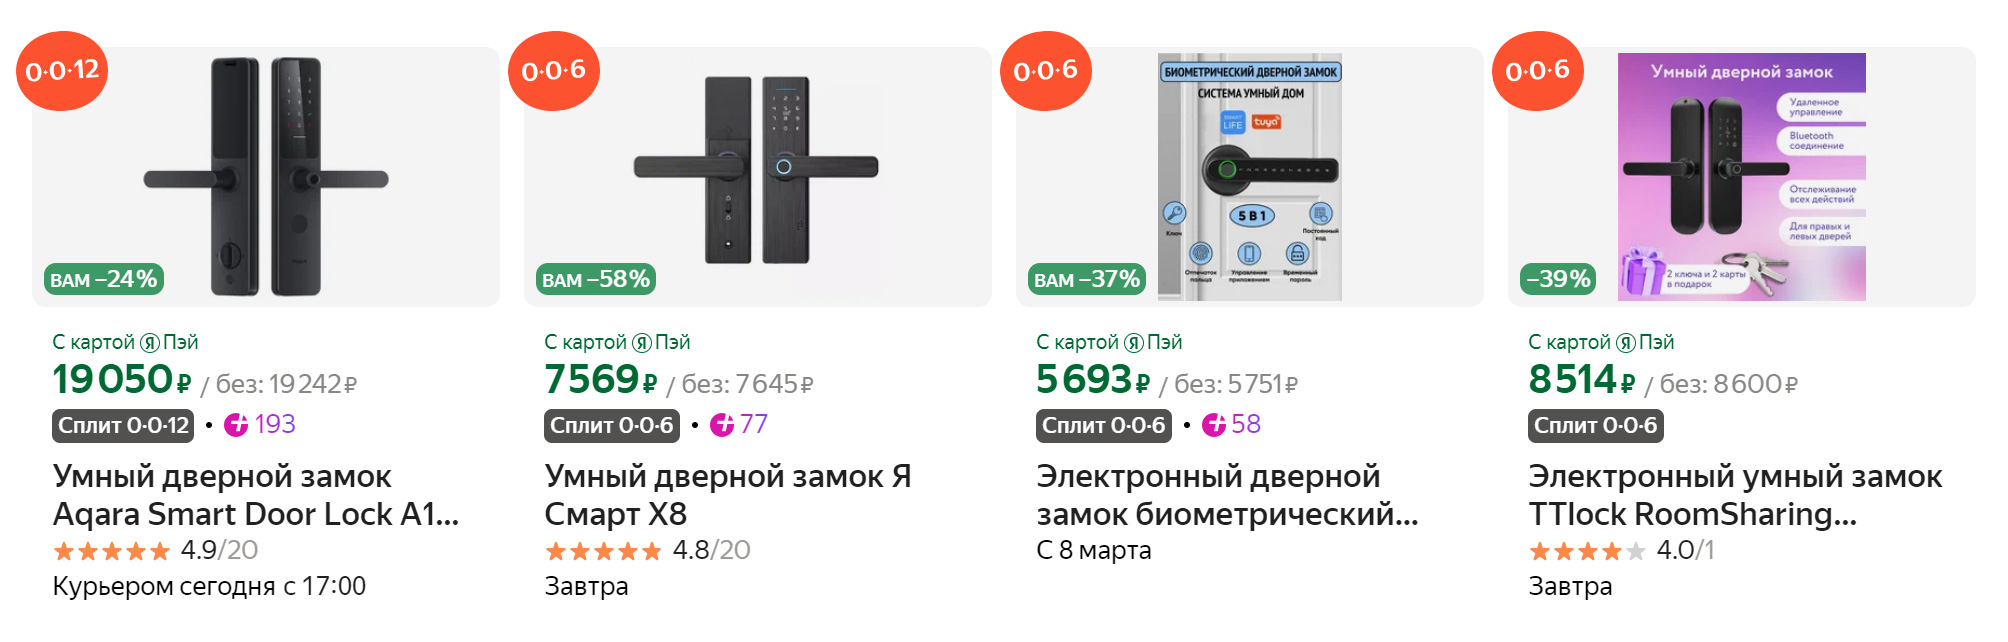 Электронный замок стоит дороже, но с ним намного удобнее и безопаснее. Источник: market.yandex.ru